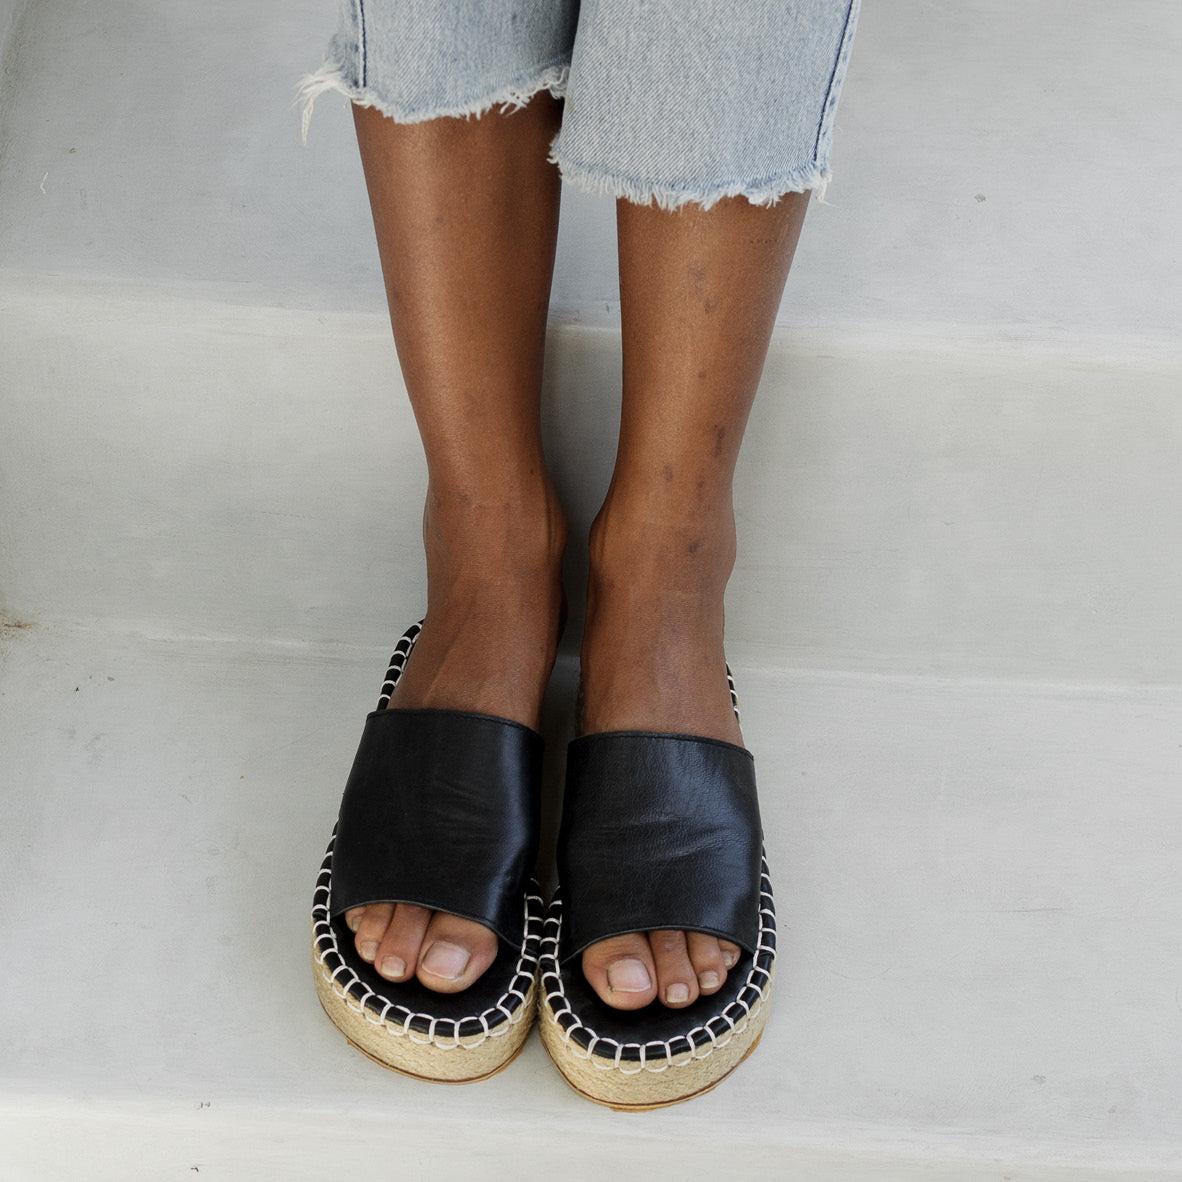 Milos Mule Platform Sandal by Luna & Rose Leather